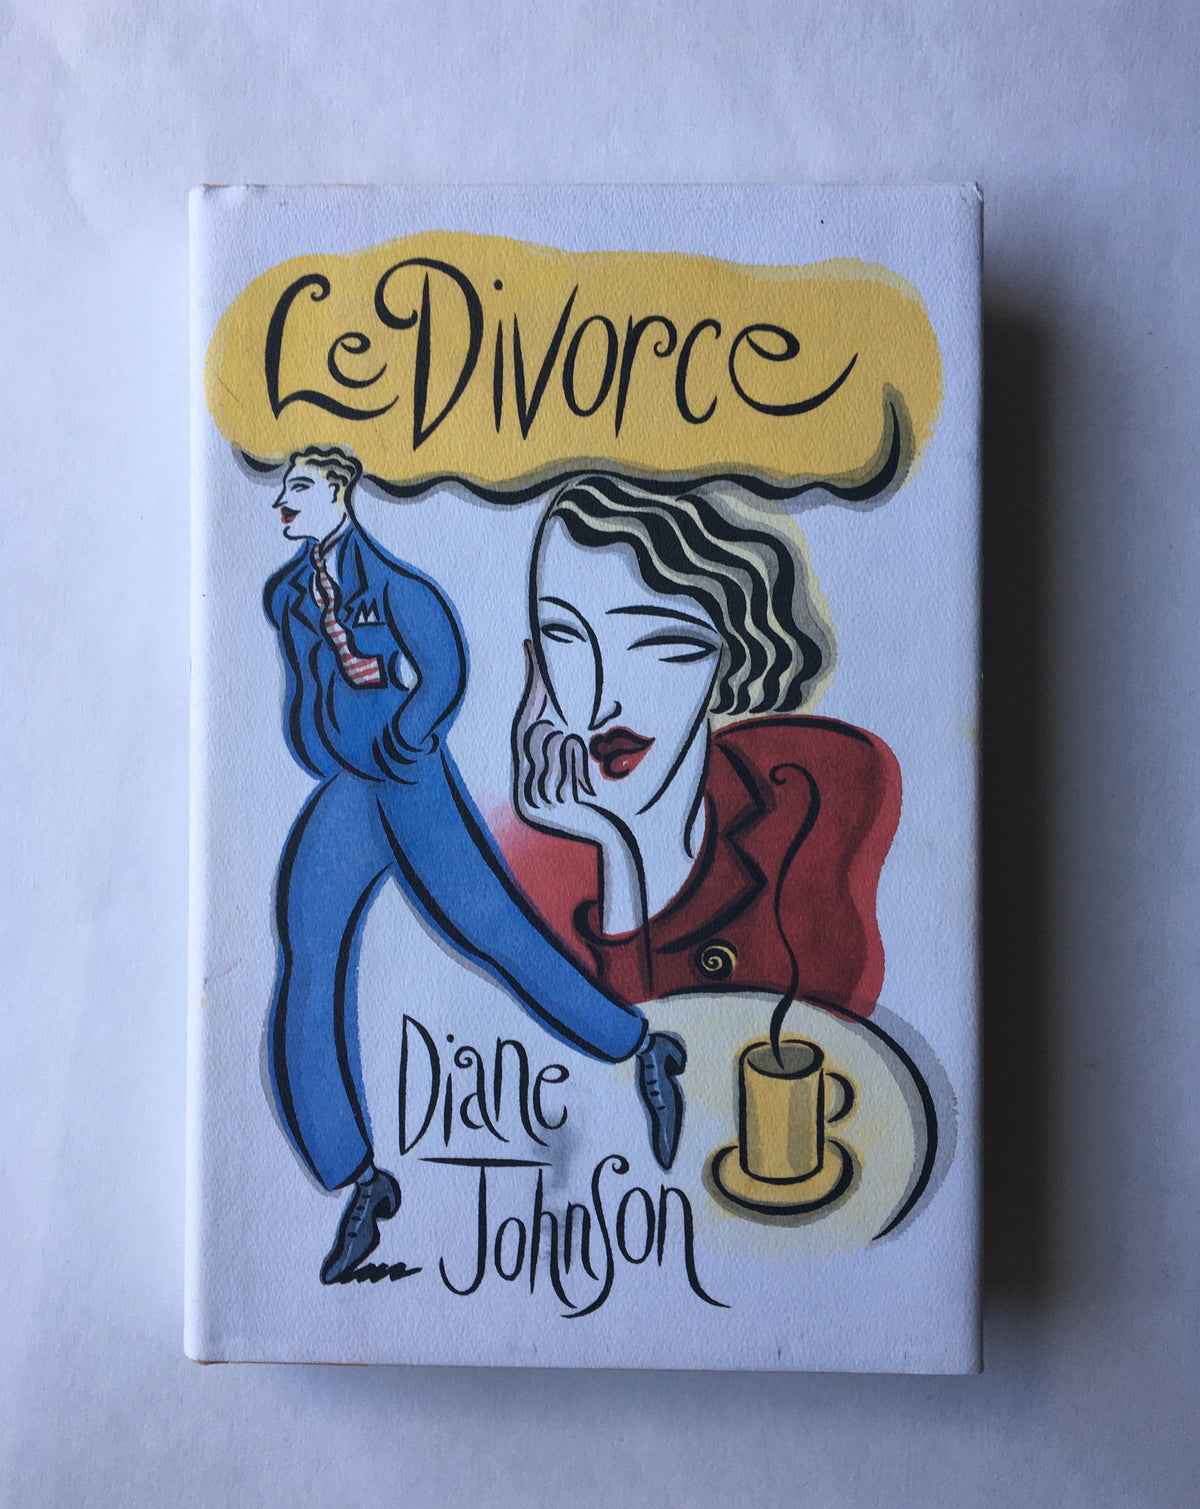 Le Divorce by Diane Johnson